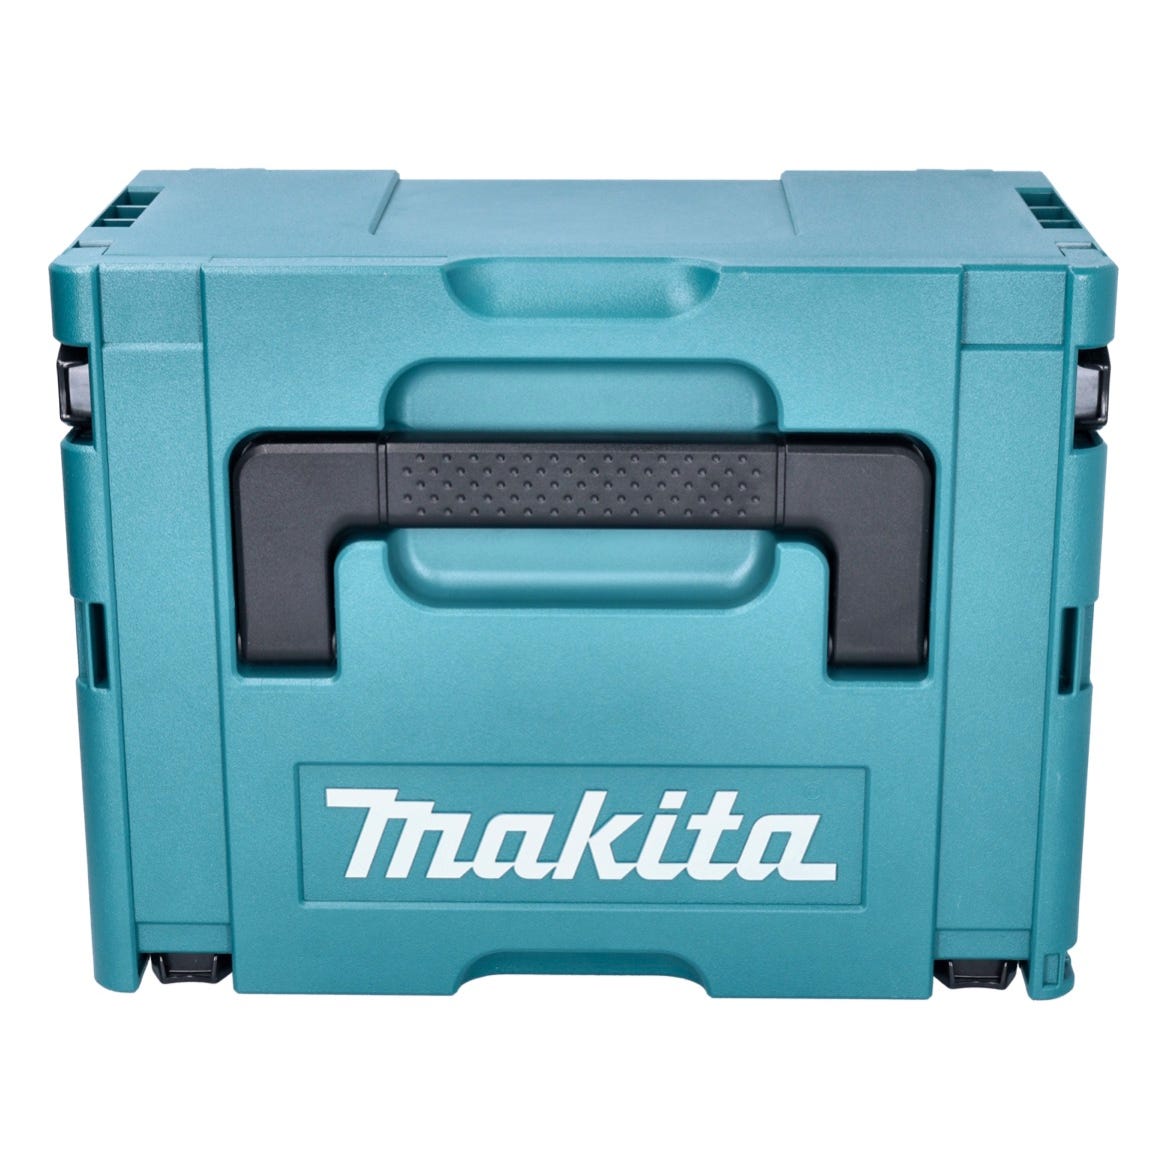 Makita DHR 183 RFJ marteau perforateur sans fil 18 V 1,7 J SDS plus brushless + 2x batterie 3,0 Ah + chargeur + makpac 2